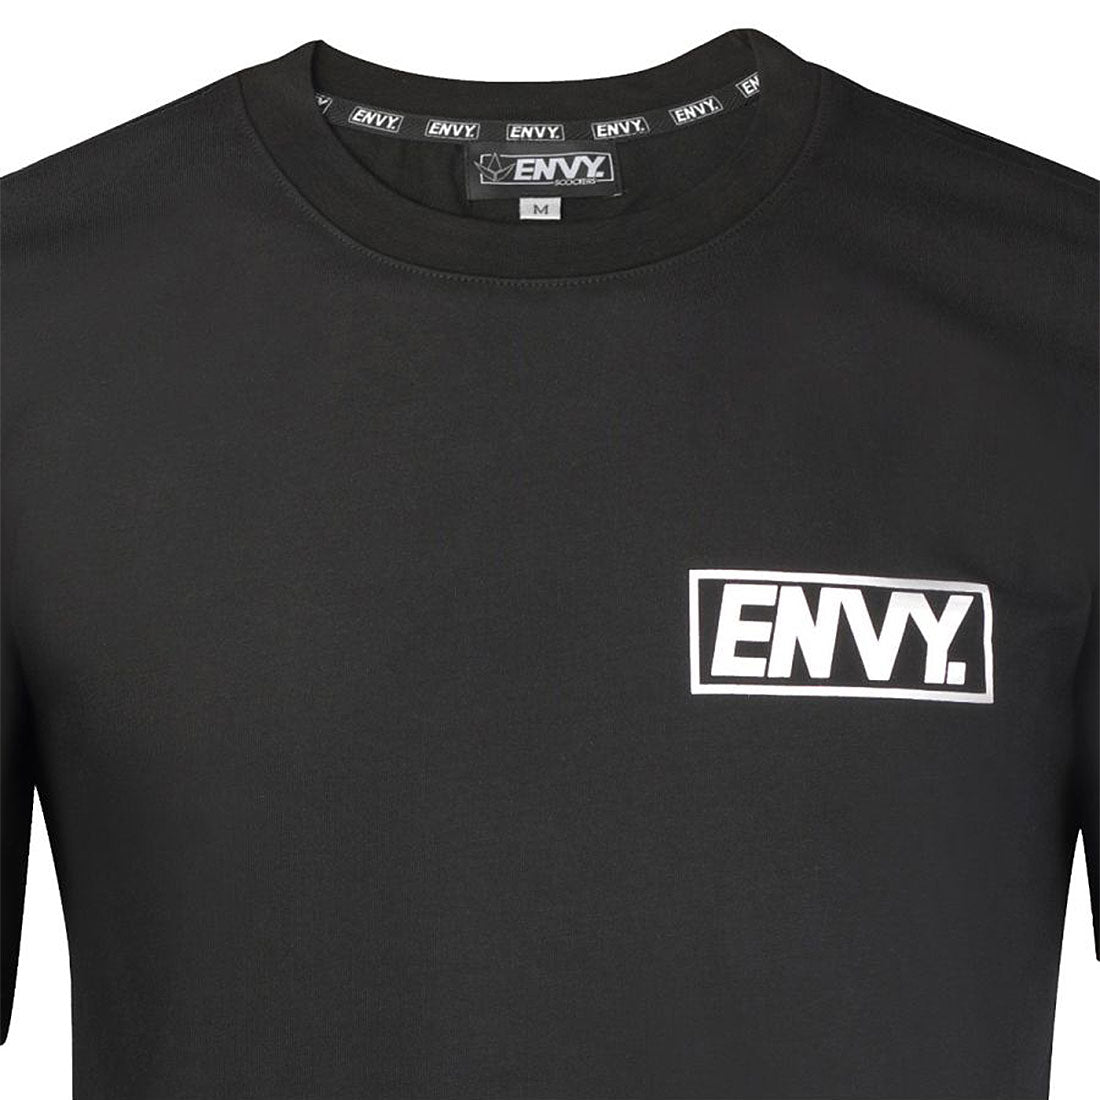 Envy Essential T-Shirt - Black Apparel Tshirts